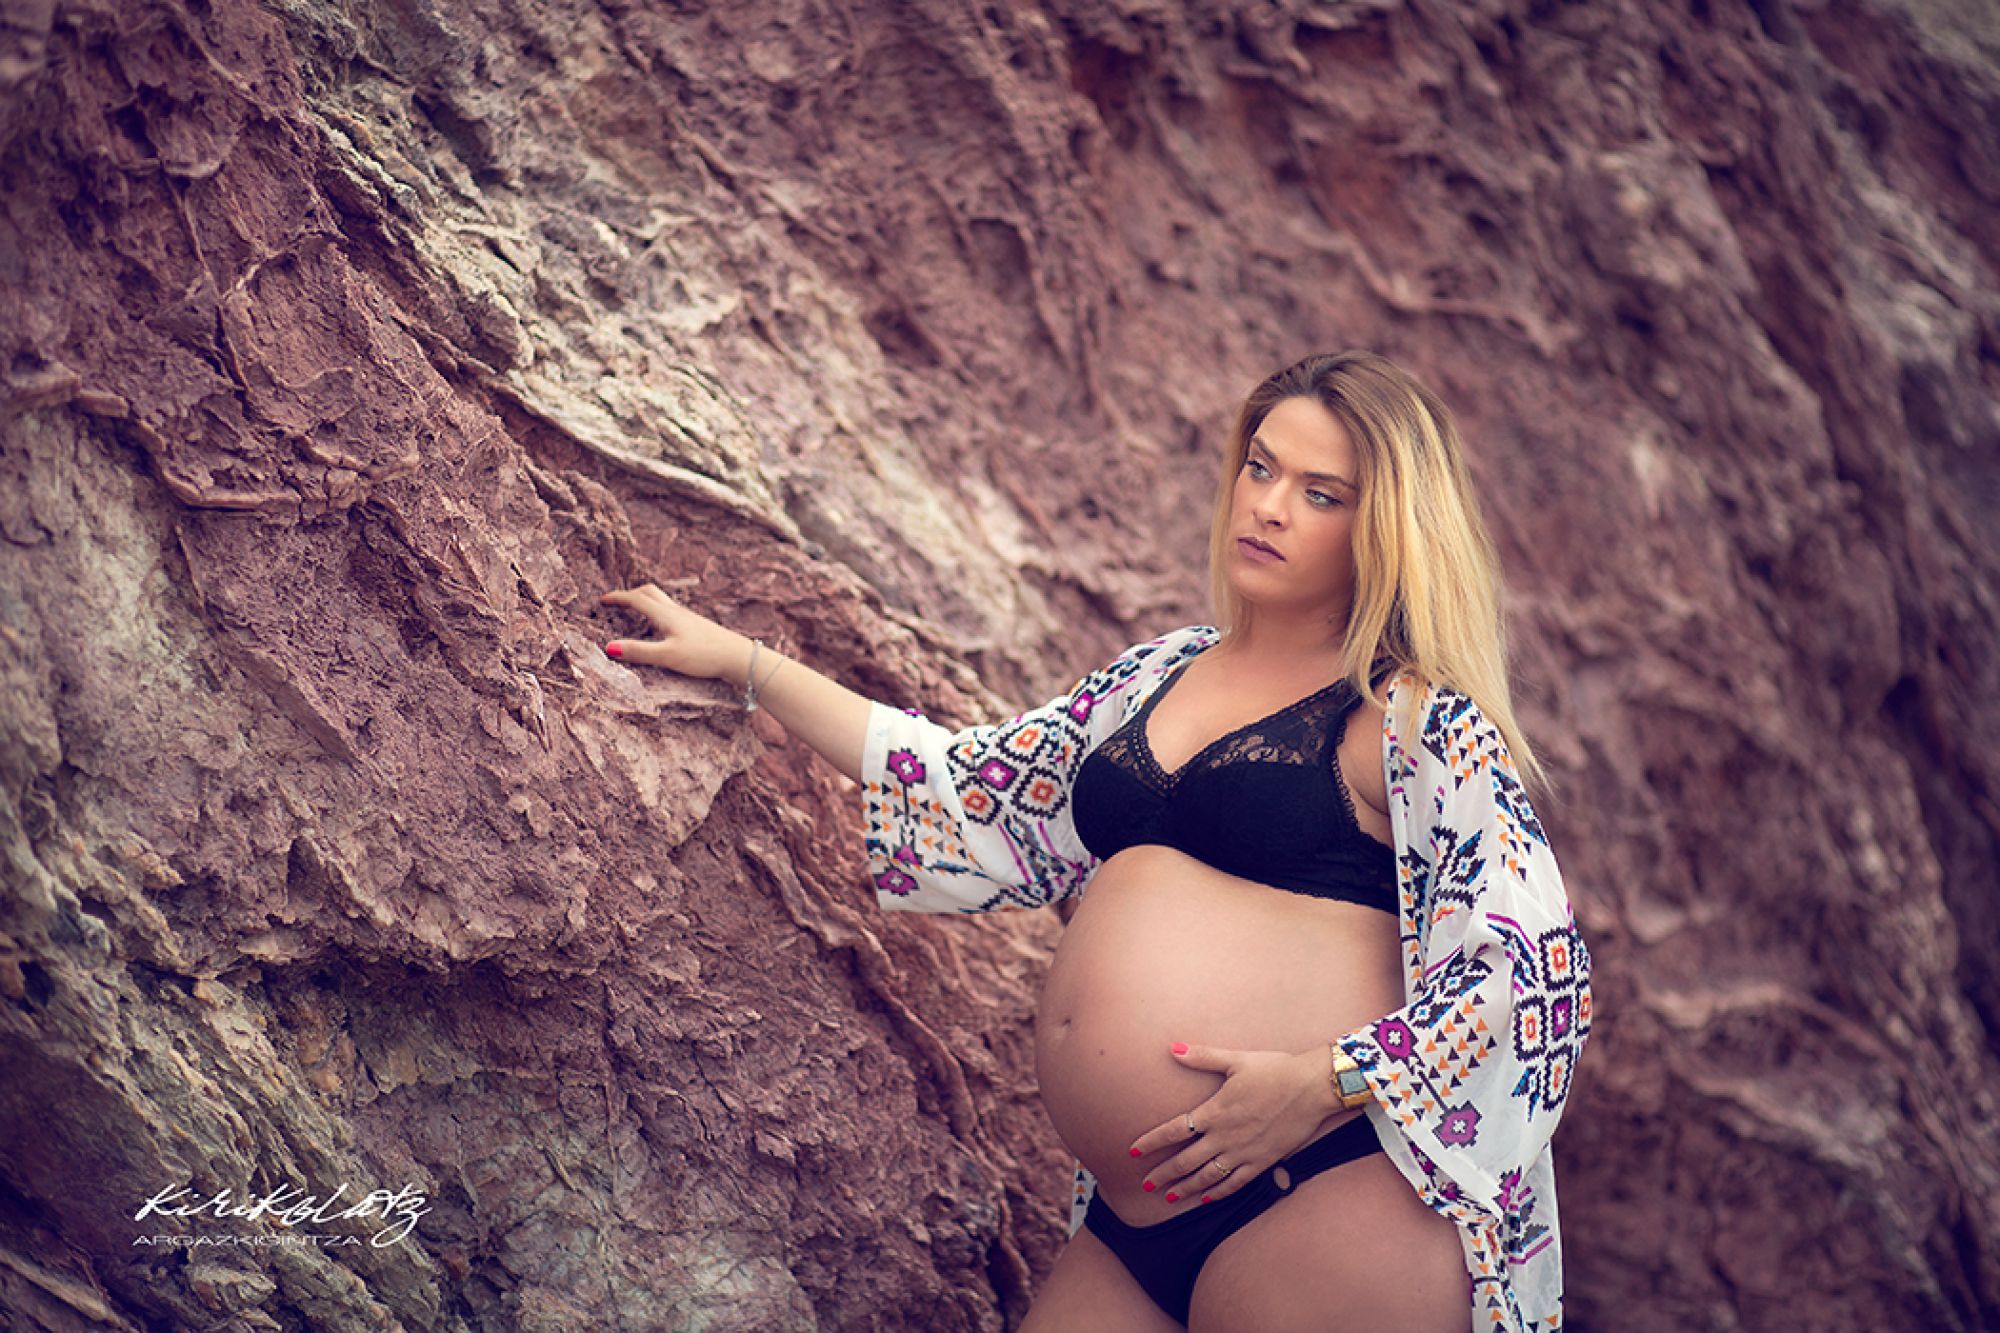 Fotos de embarazo en Bizkaia